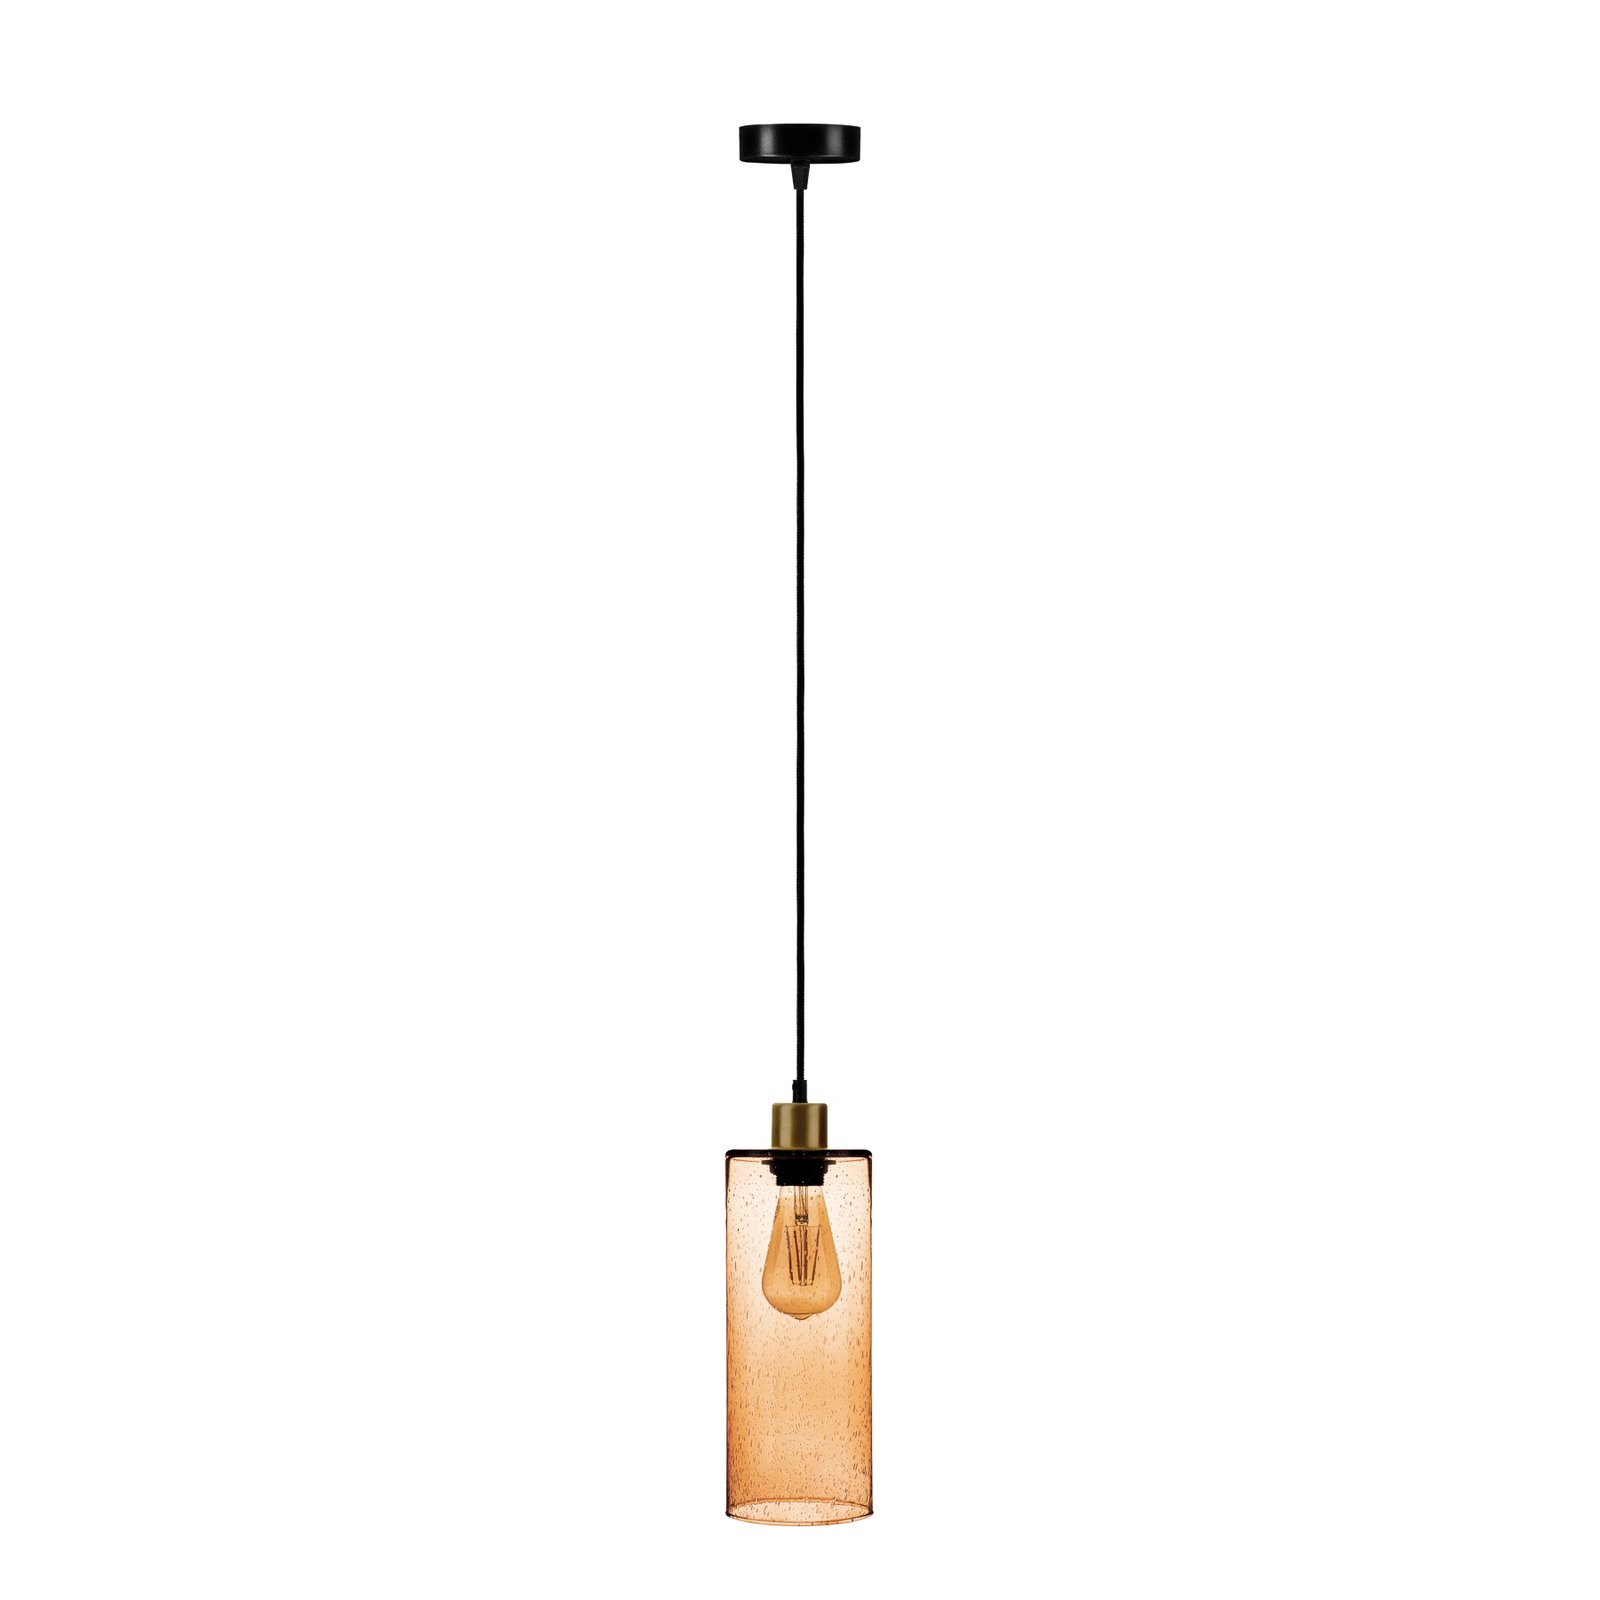 Hanglamp Soda glazen cilinder lichtbruin Ø 12cm